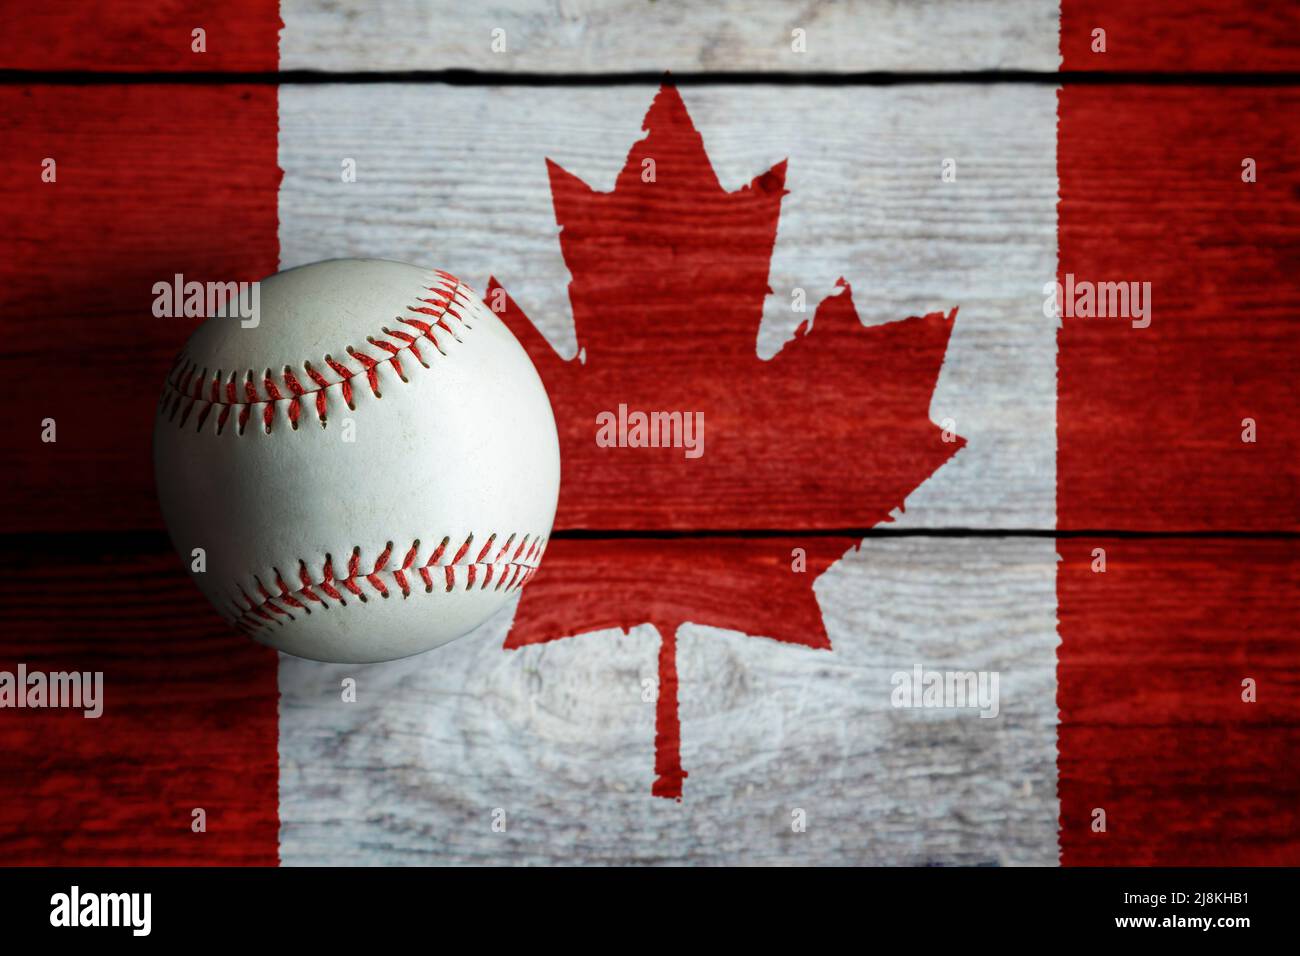 Béisbol de cuero sobre fondo rústico de madera pintado con bandera canadiense con espacio de copia. Canadá es una de las principales naciones de béisbol del mundo. Foto de stock